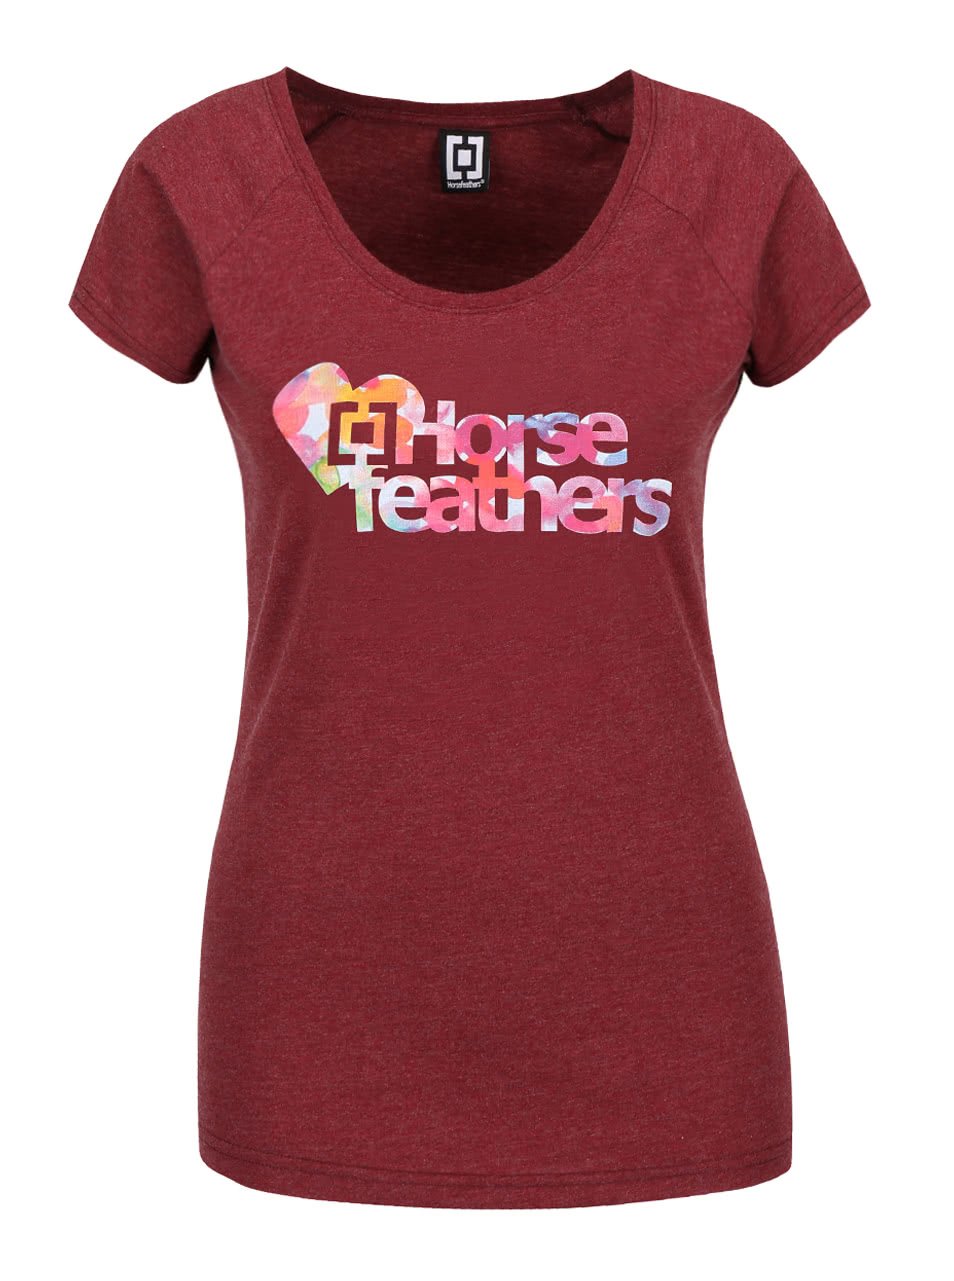 Vínové dámské žíhané tričko s barevným nápisem Horsefeathers Piece